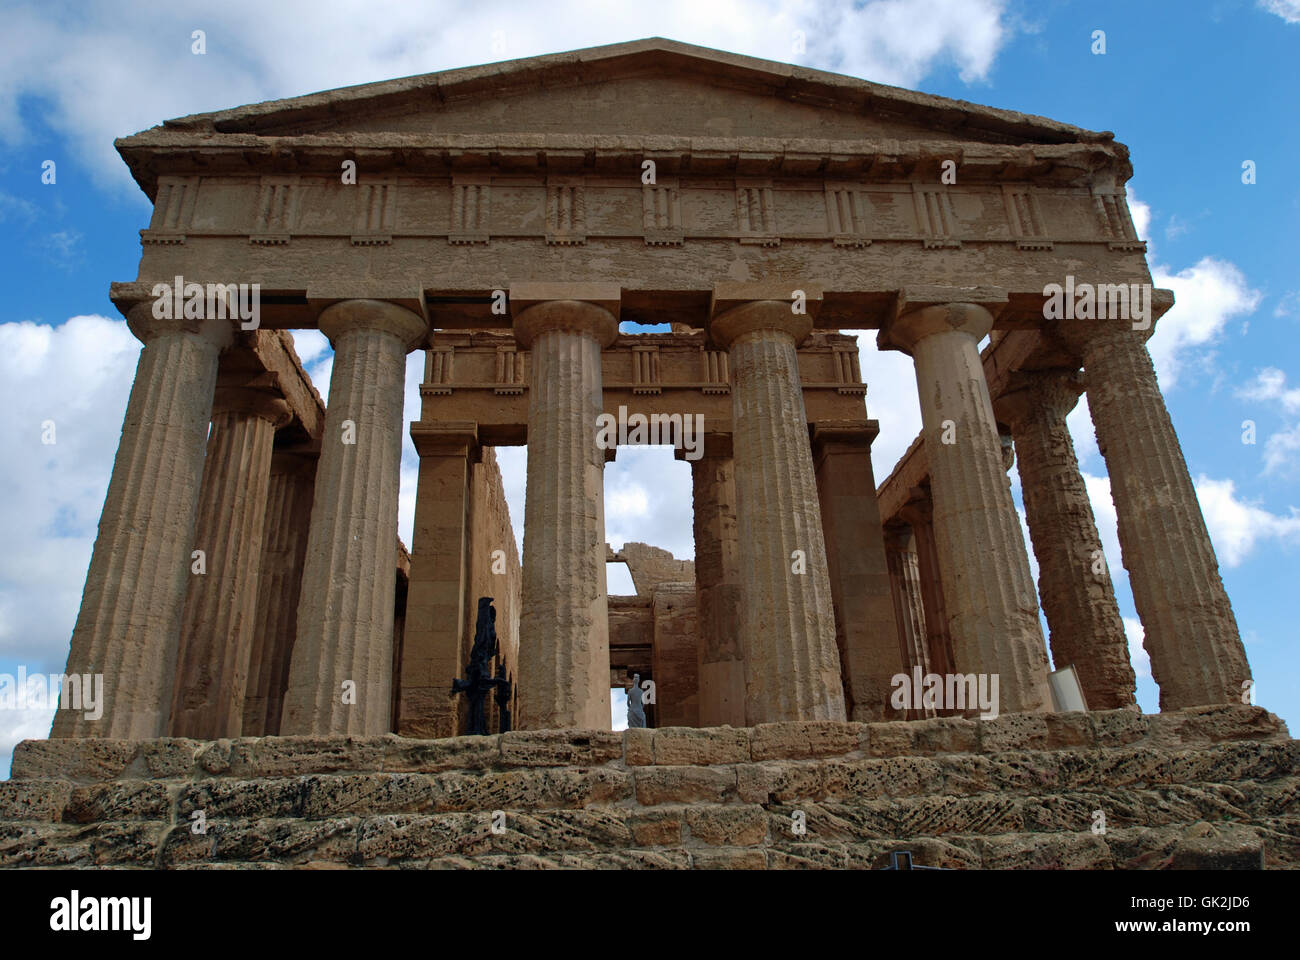 temple columns ruin Stock Photo